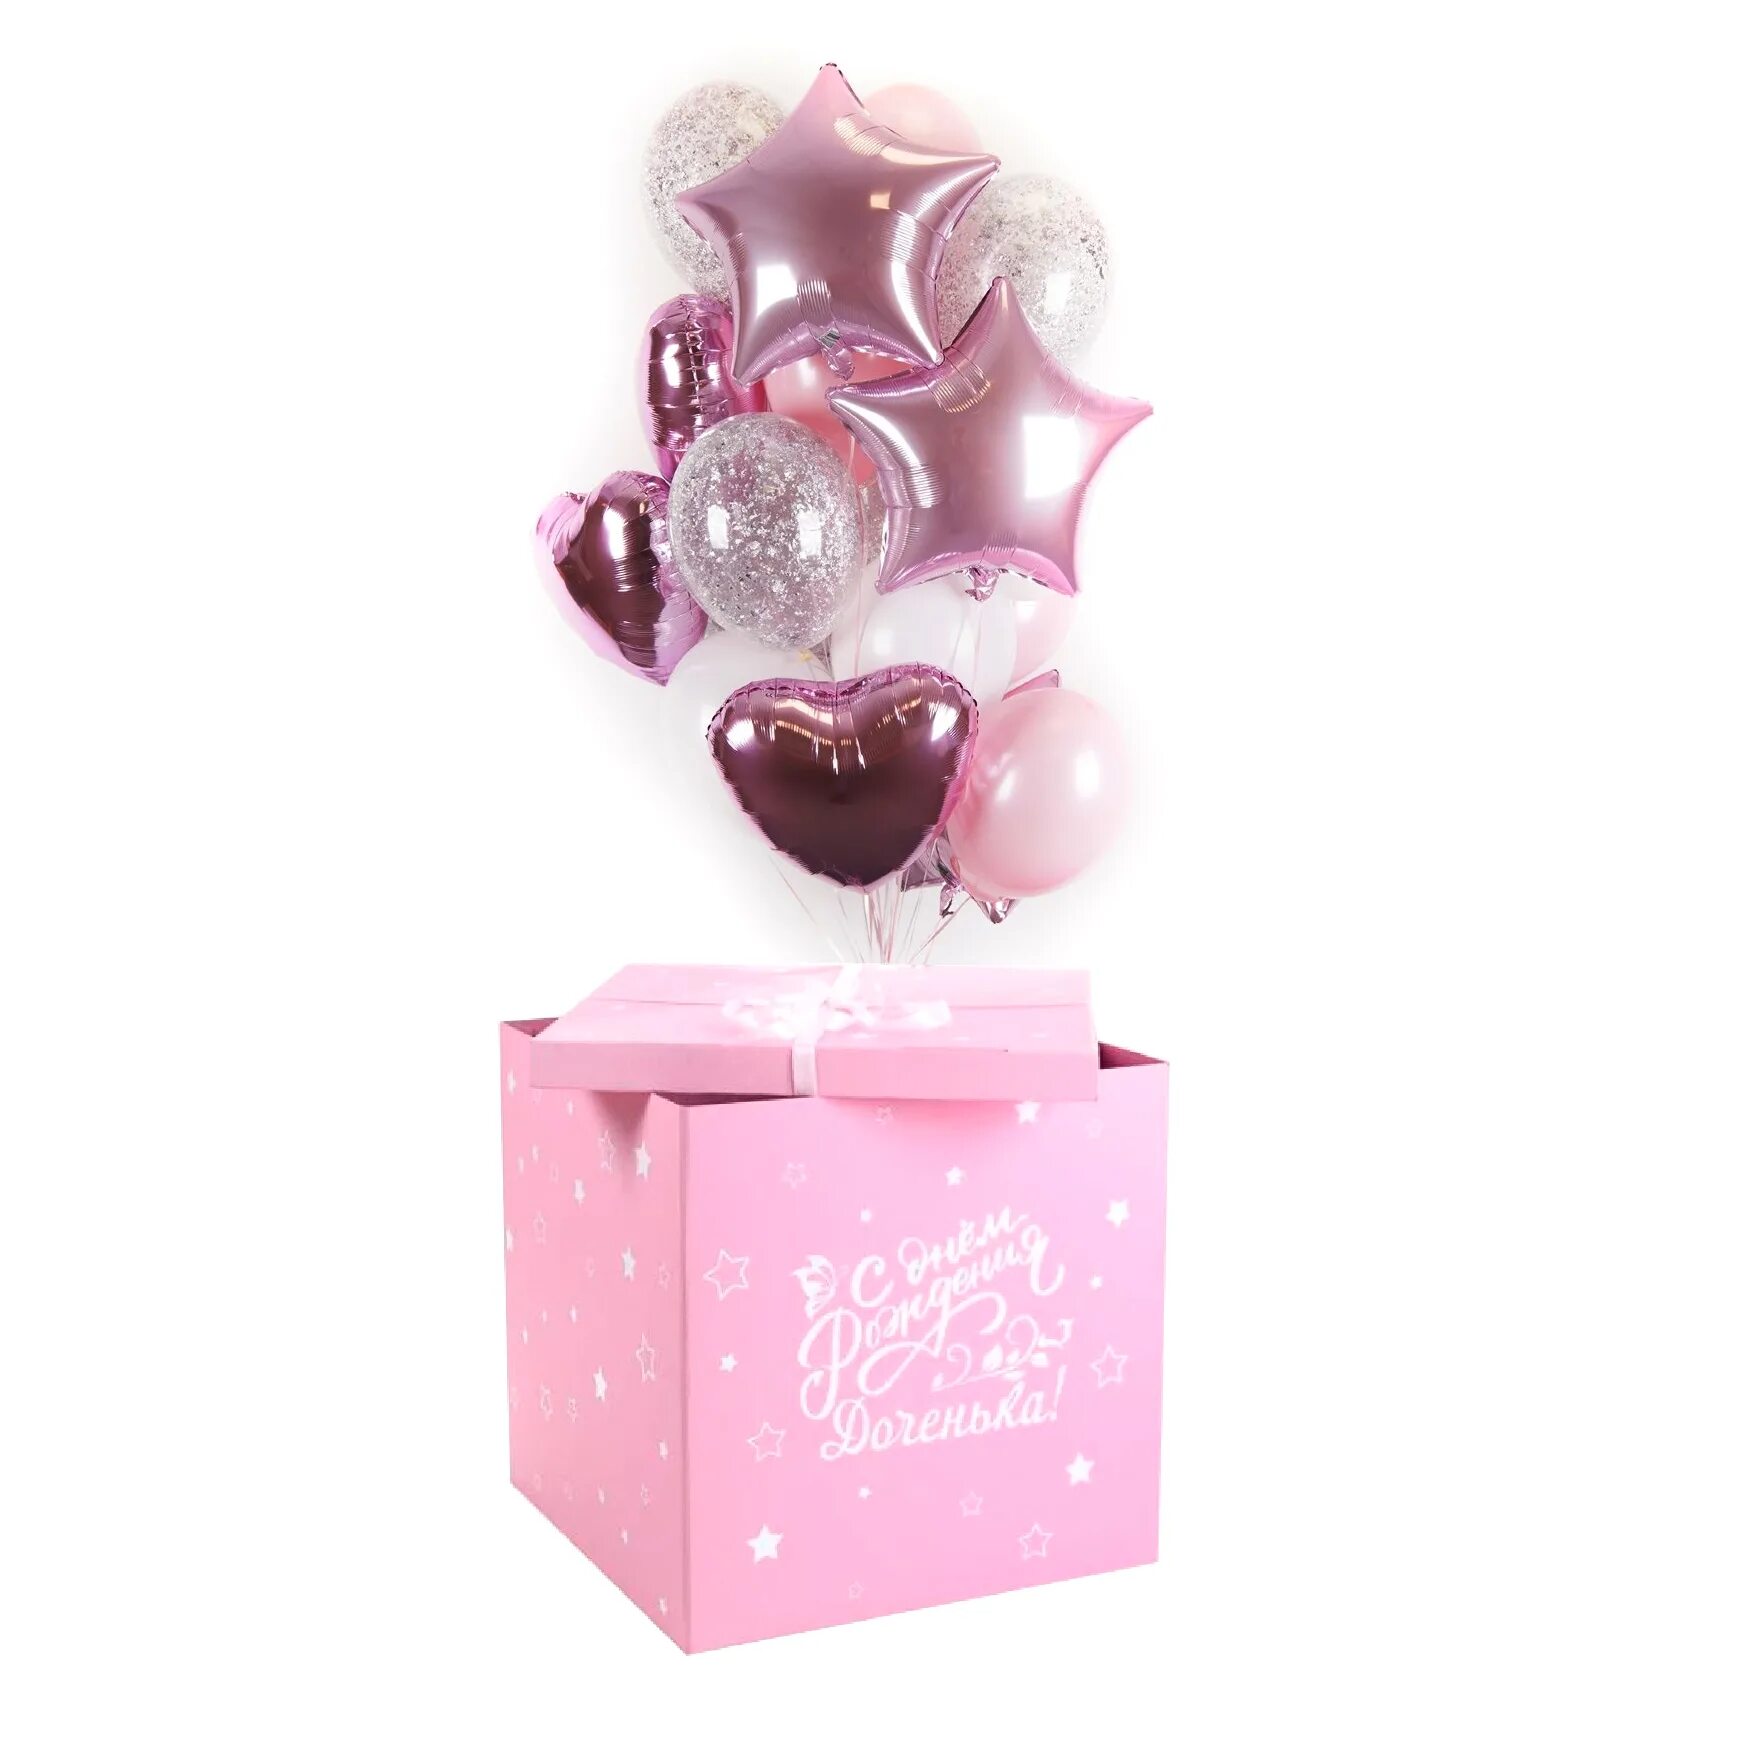 Воздушные шарики подарок. Коробка с шарами. Коробка с шарами для девочки. Коробка сюрприз с шарами для девочки. Розовая коробка сюрприз с шарами.